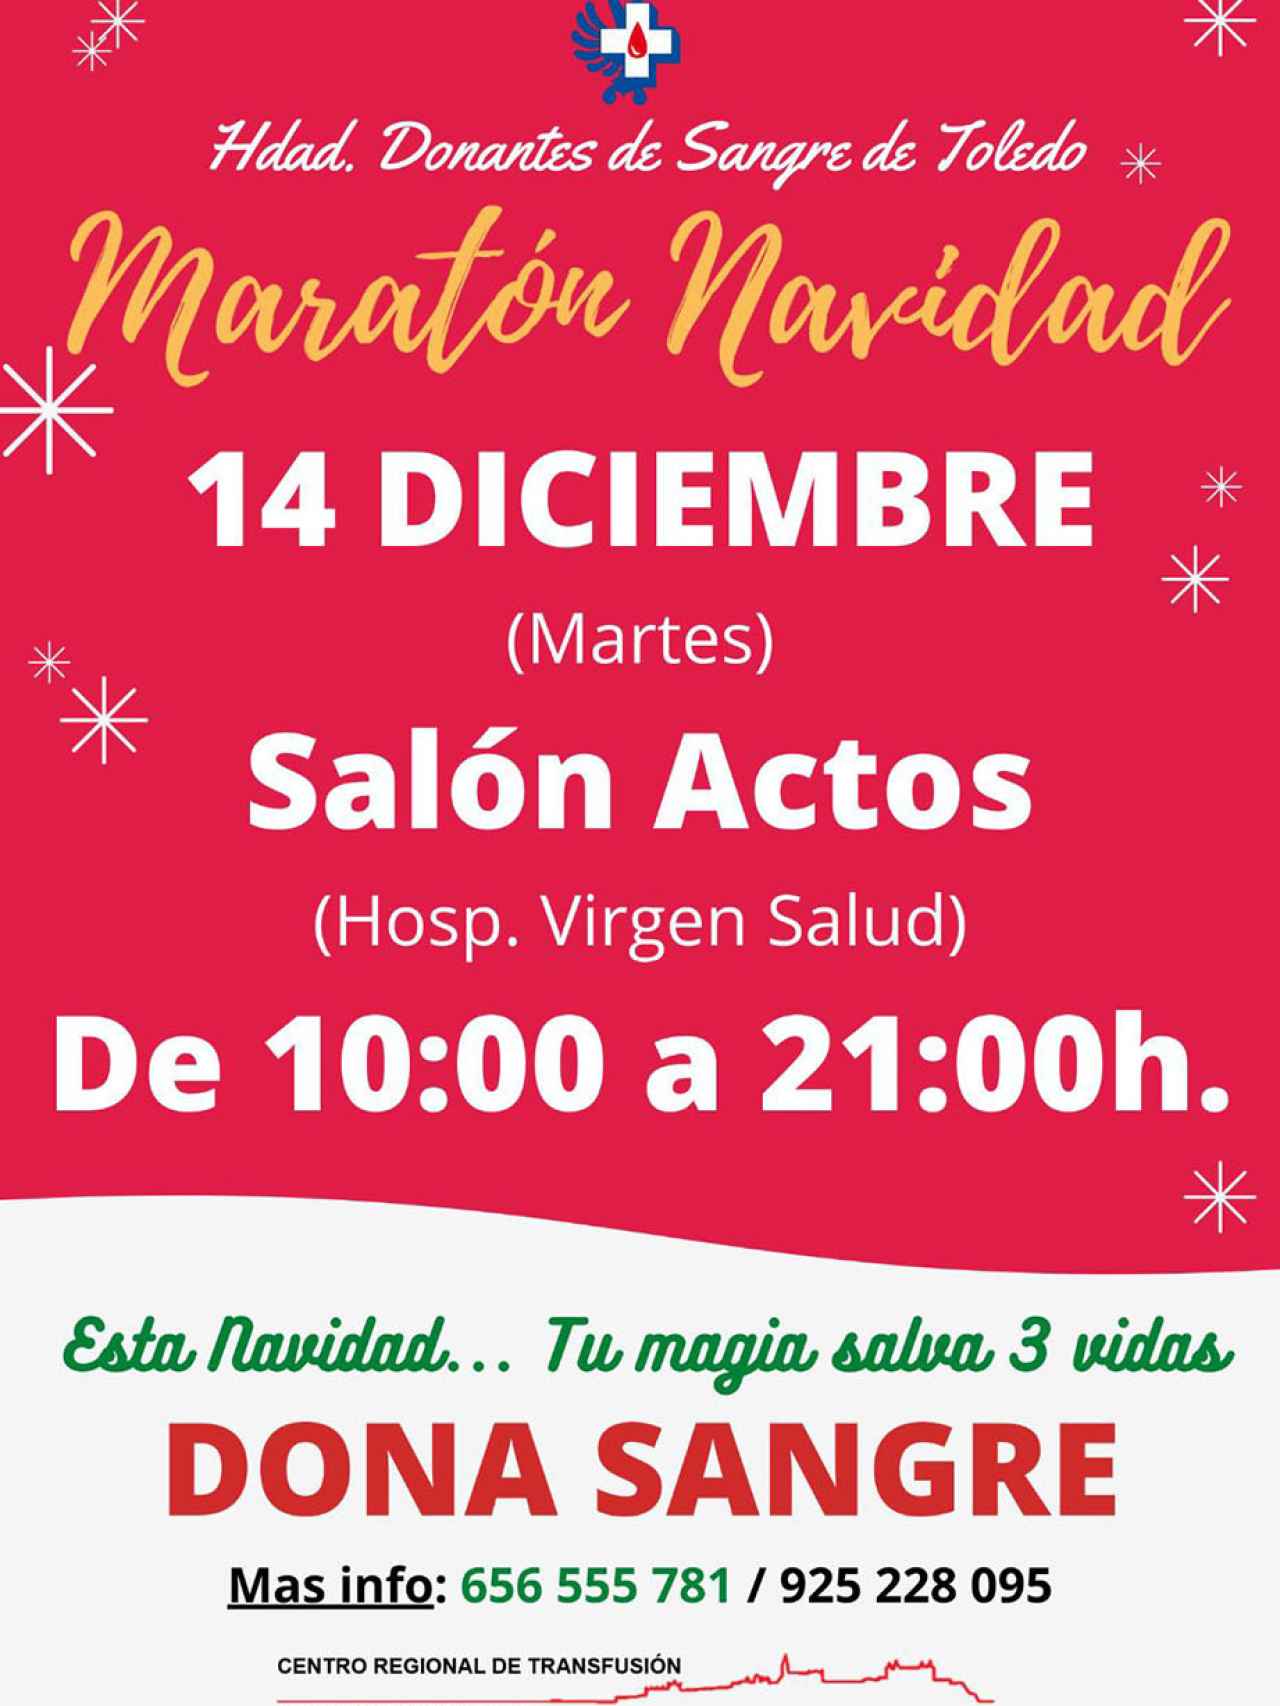 Cartel de la Maratón de Navidad de donación de sangre en Toledo